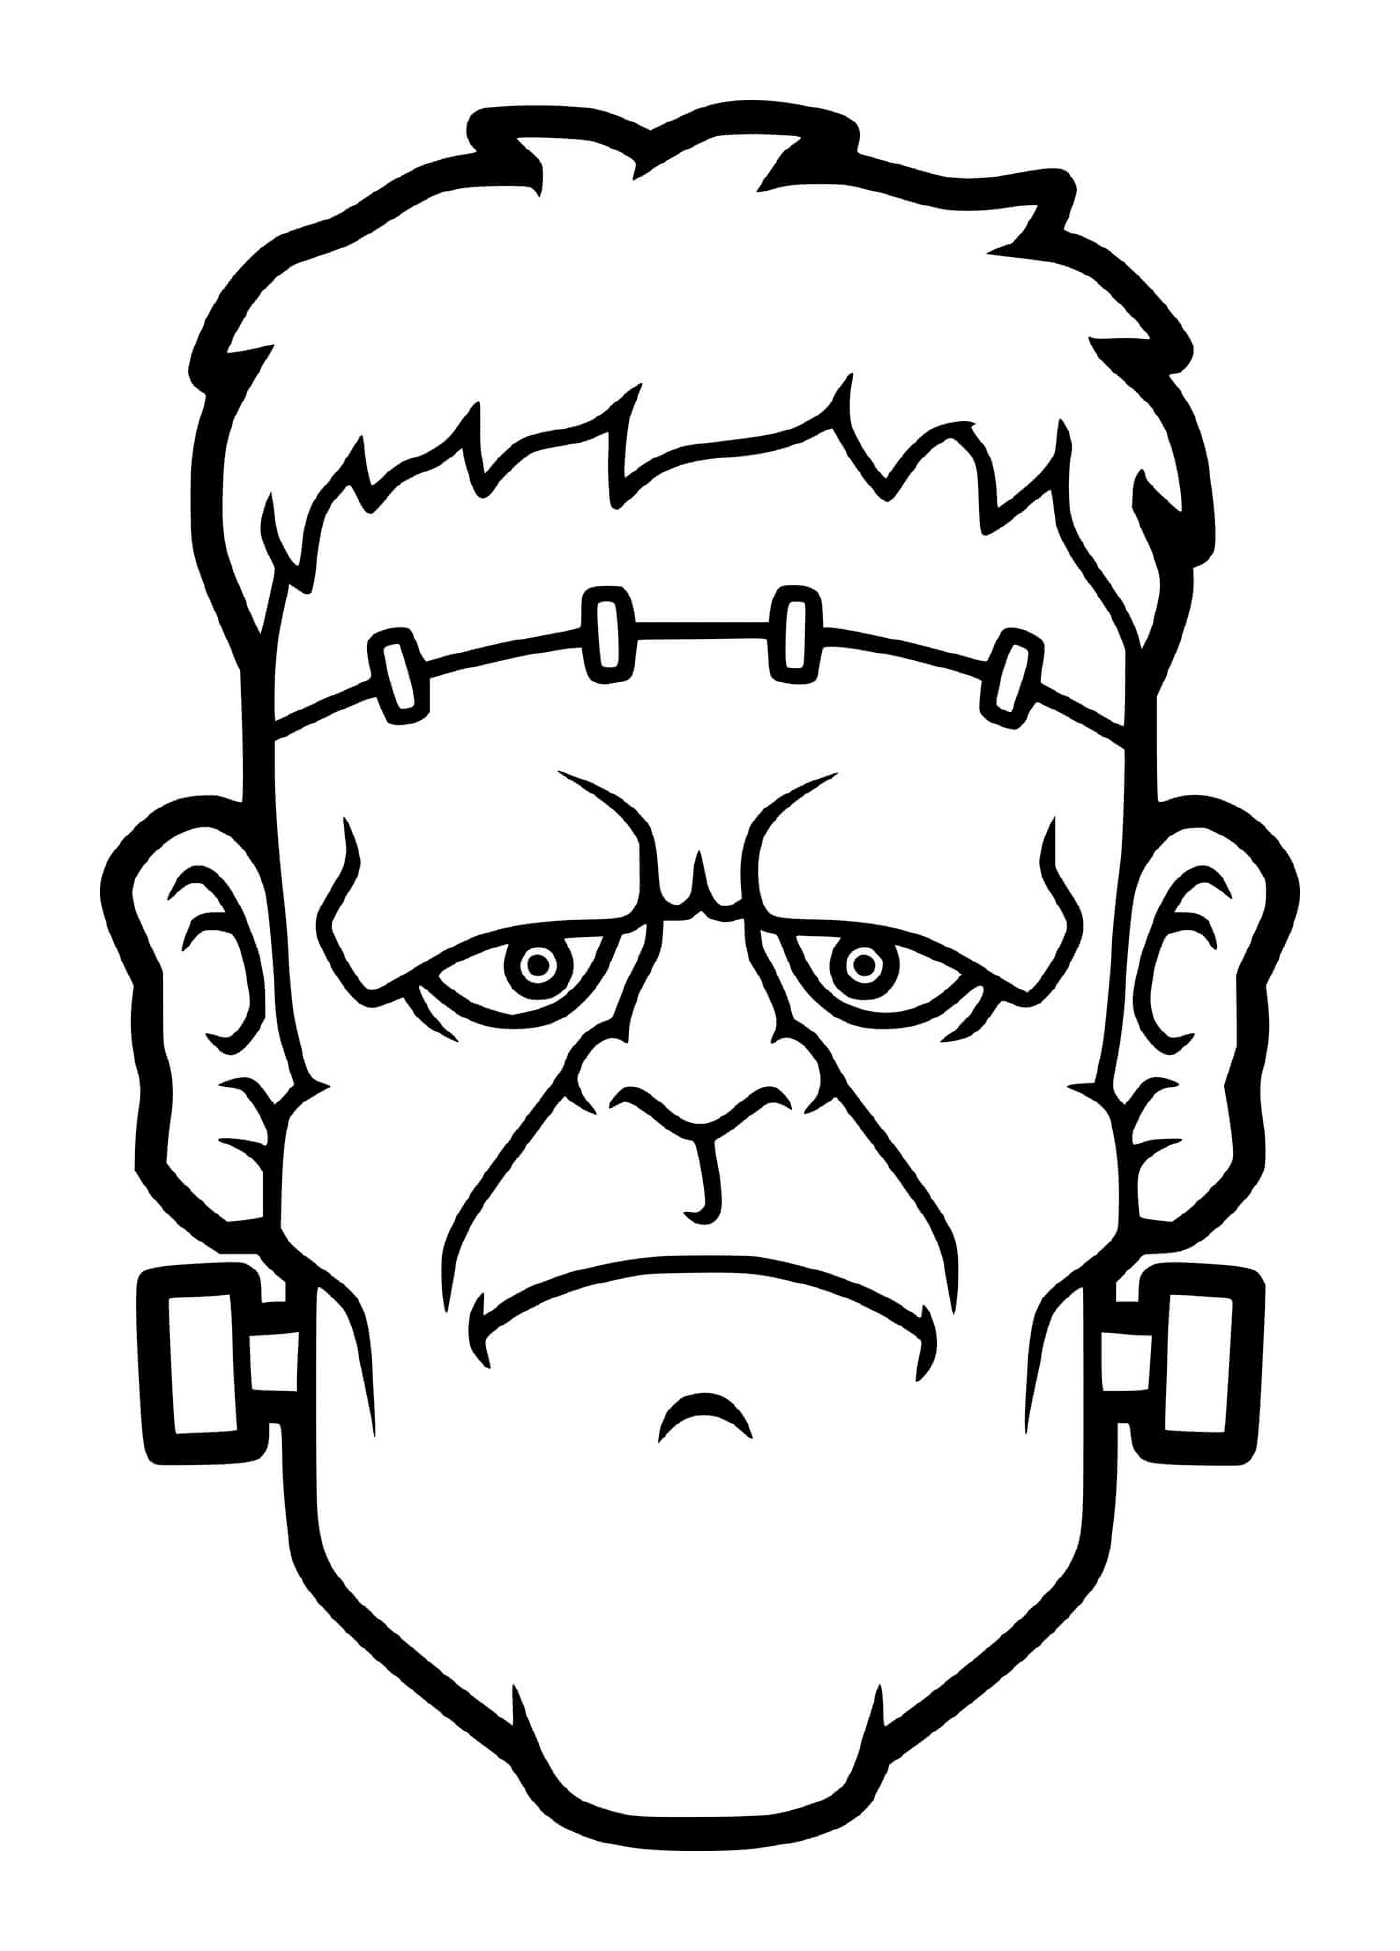  La testa realistica di Frankenstein 